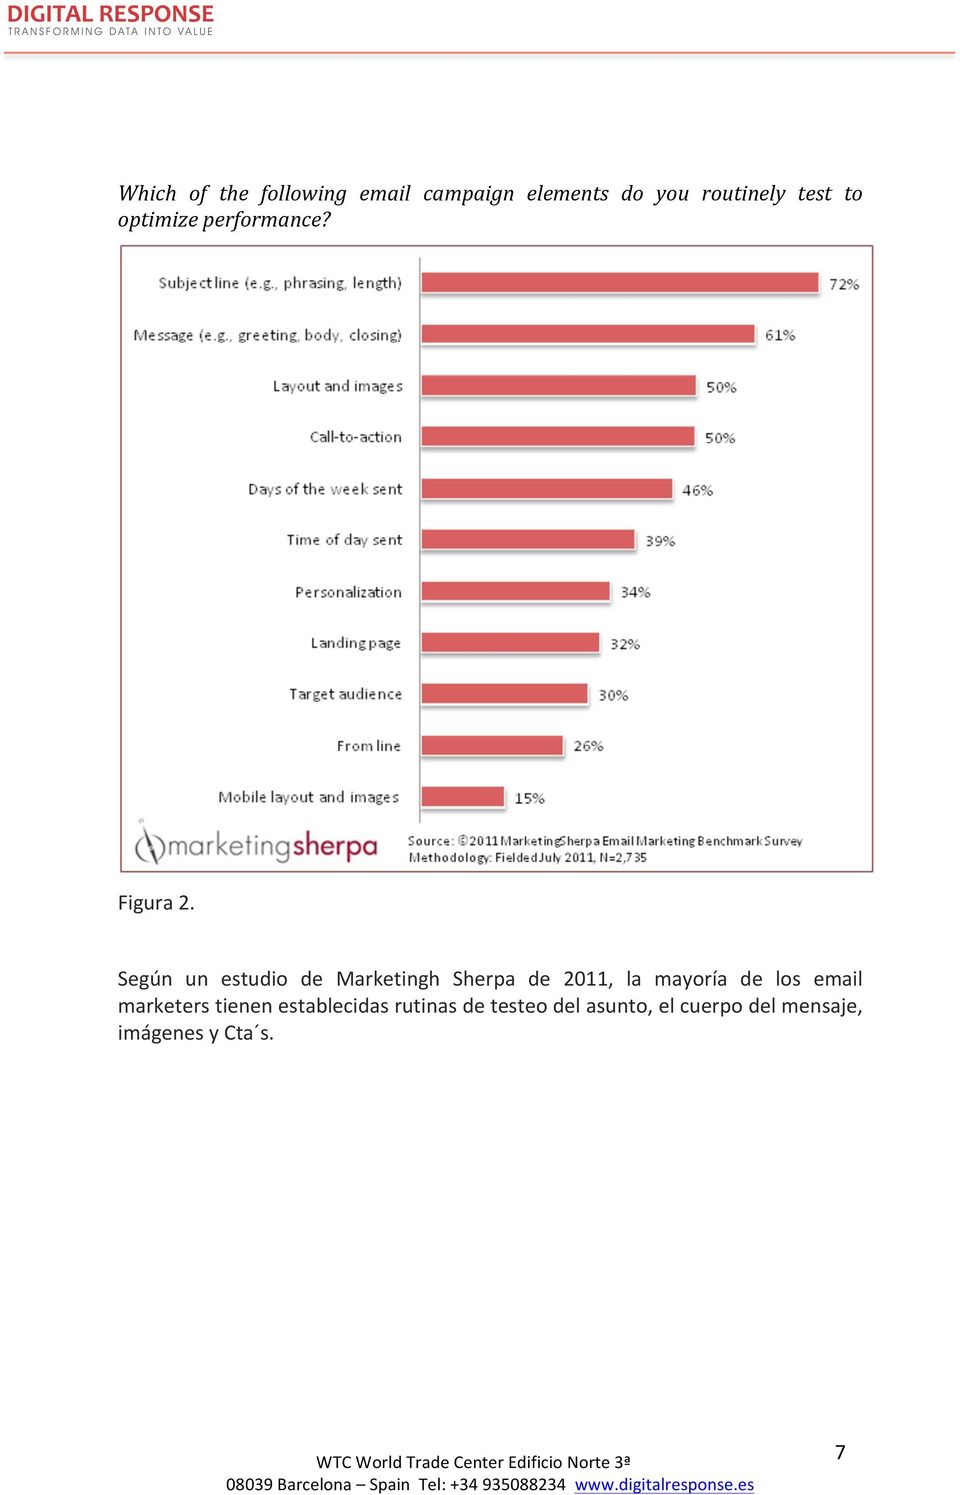 Según un estudio de Marketingh Sherpa de 2011, la mayoría de los